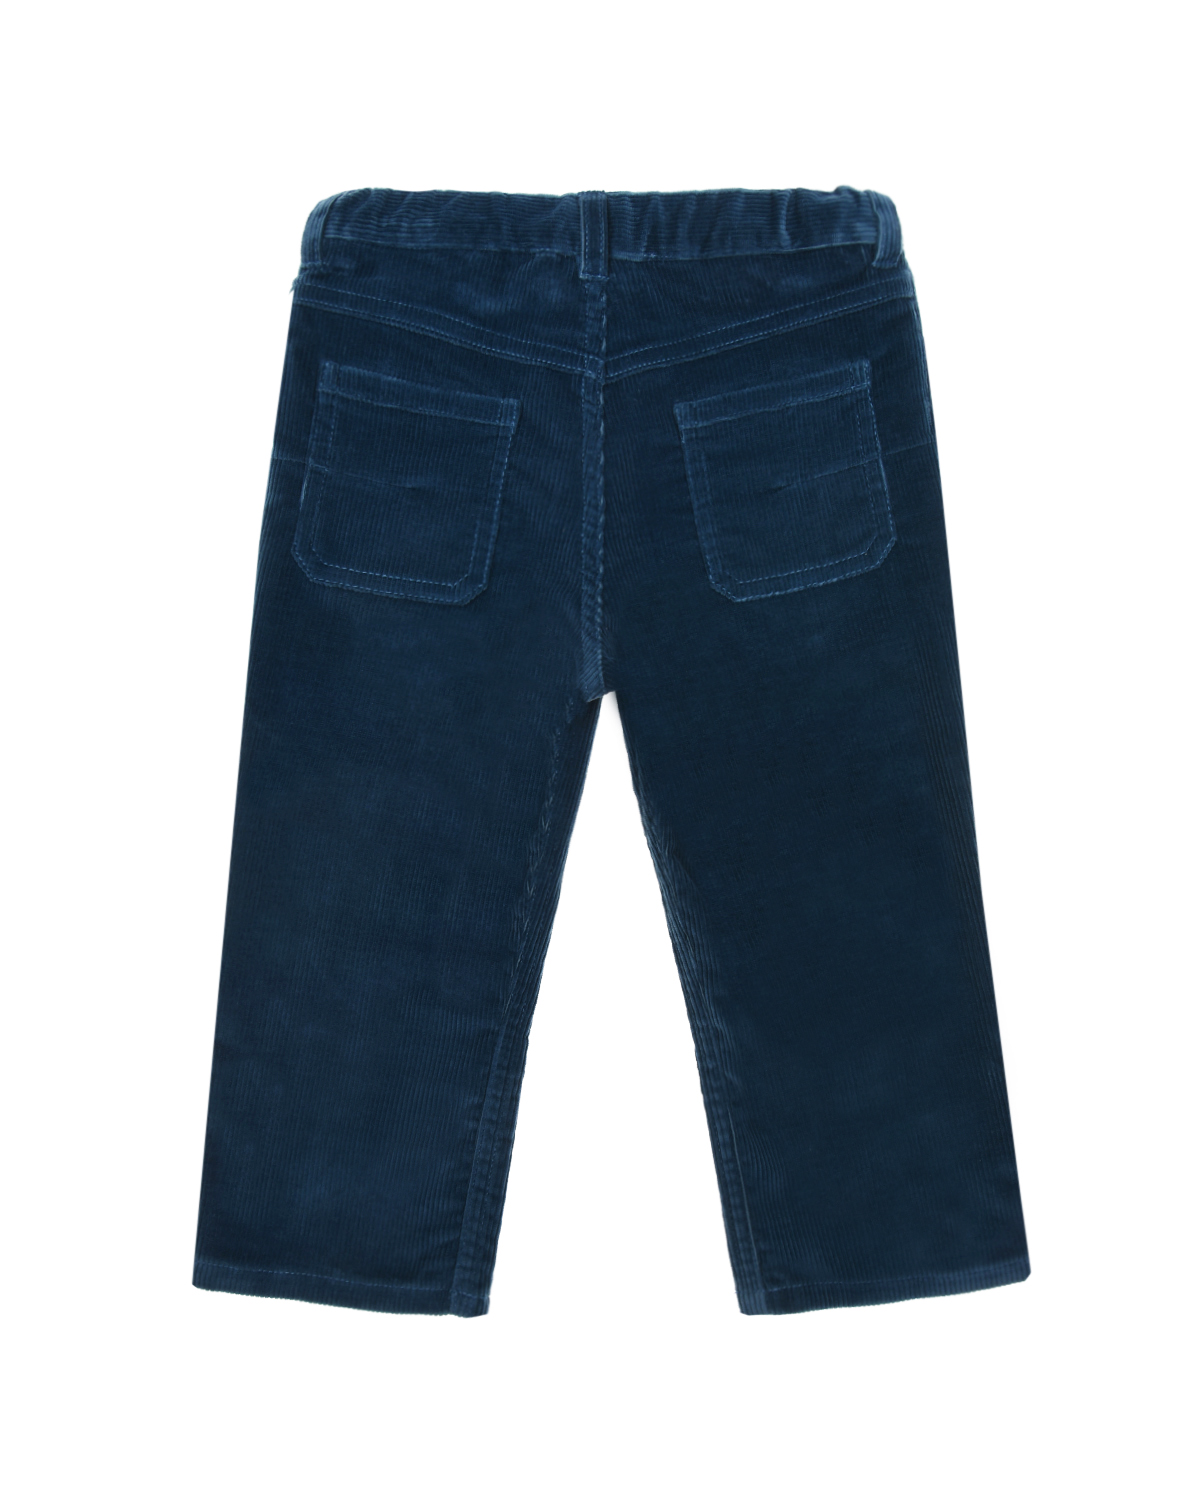 Вельветовые брюки с поясом на резинке Dior детские, размер 86, цвет нет цвета - фото 2